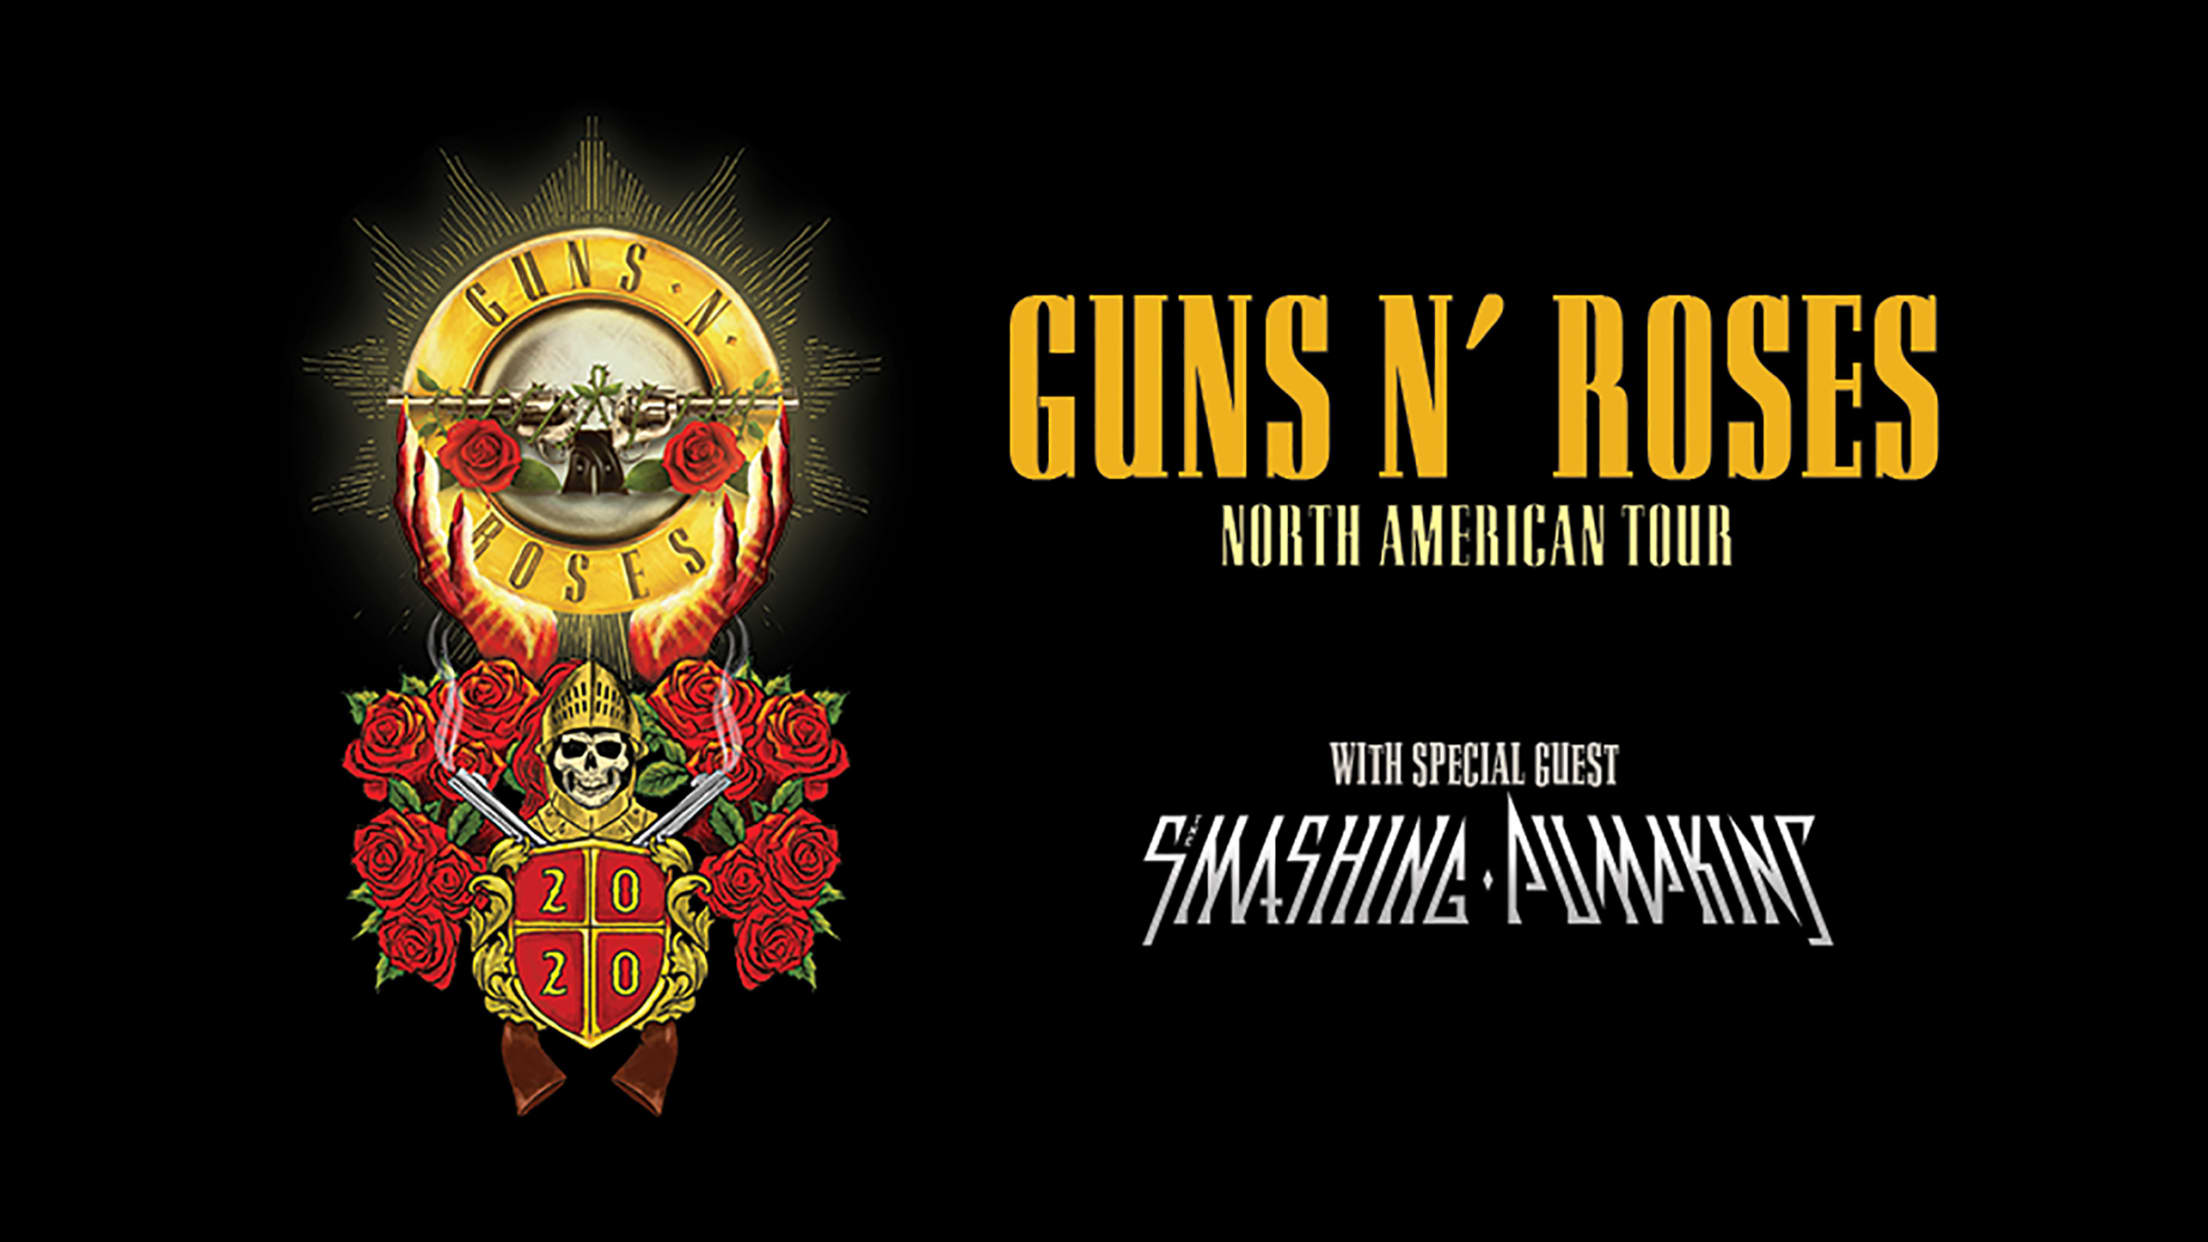 Guns N' Roses at Fenway Park Boston Red Sox